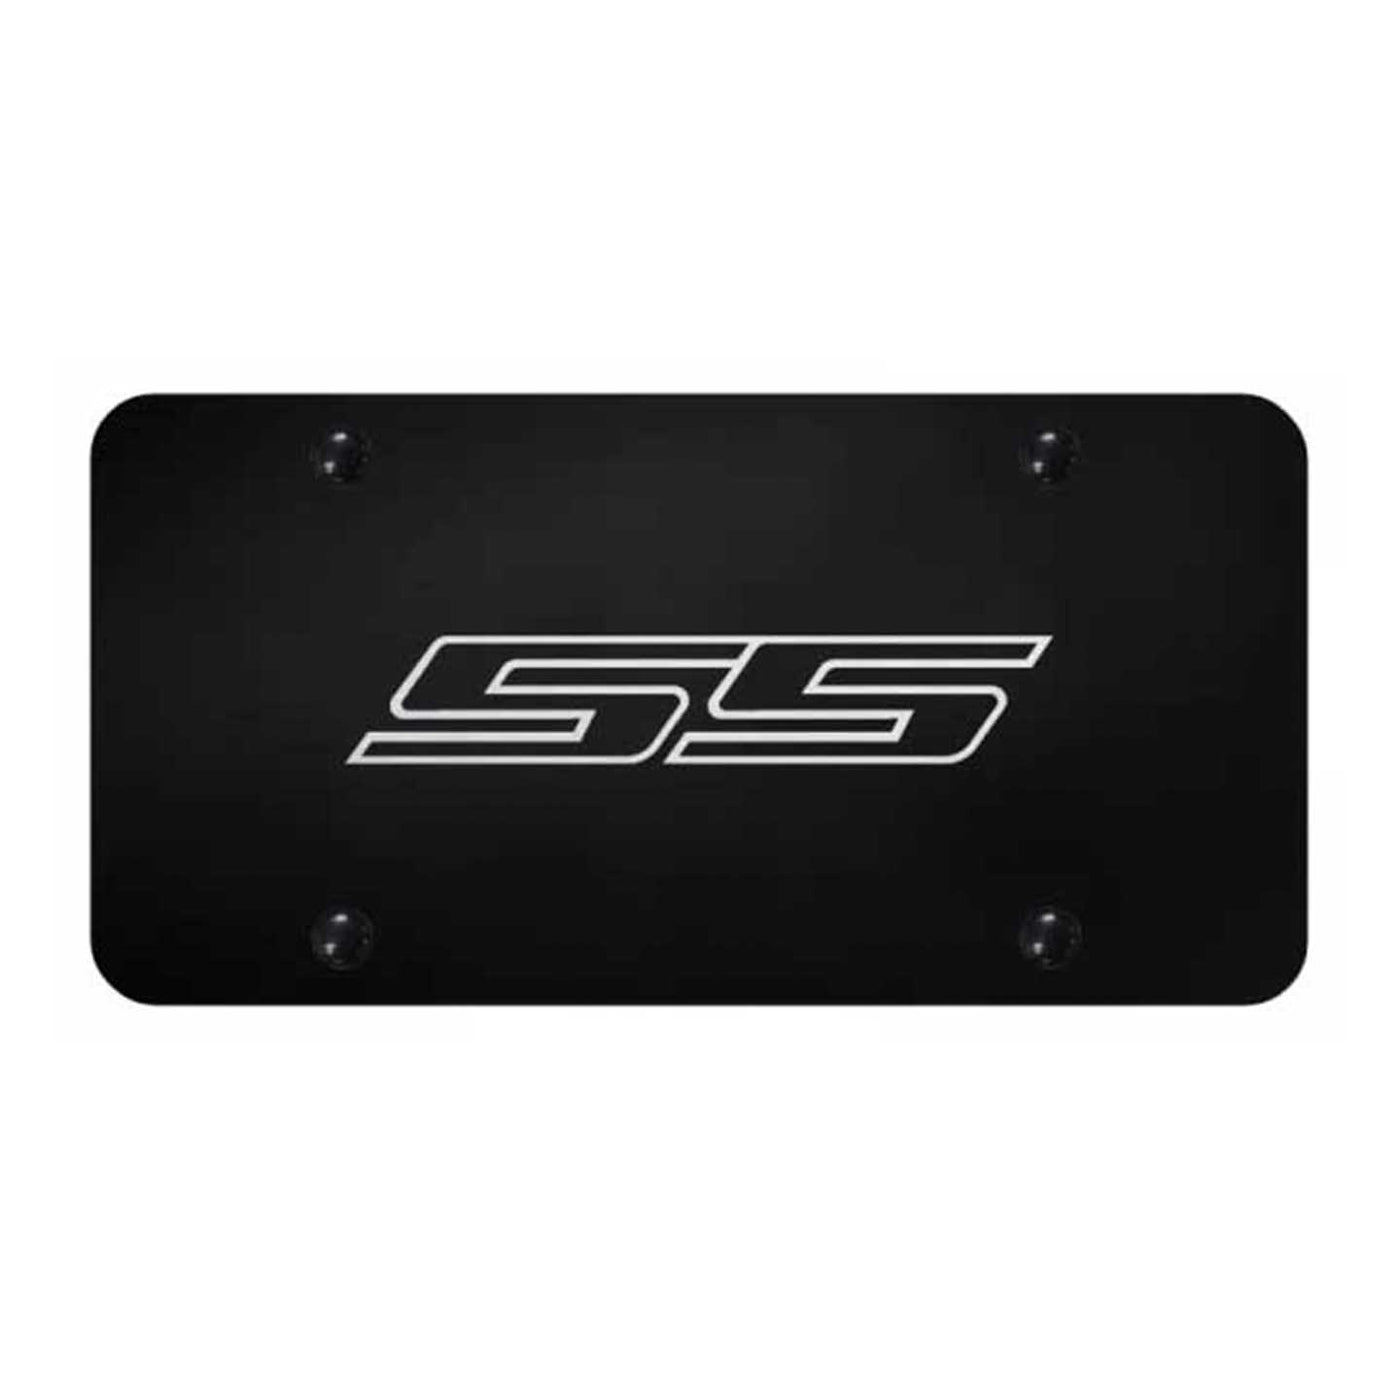 SS License Plate - Laser Etched Black